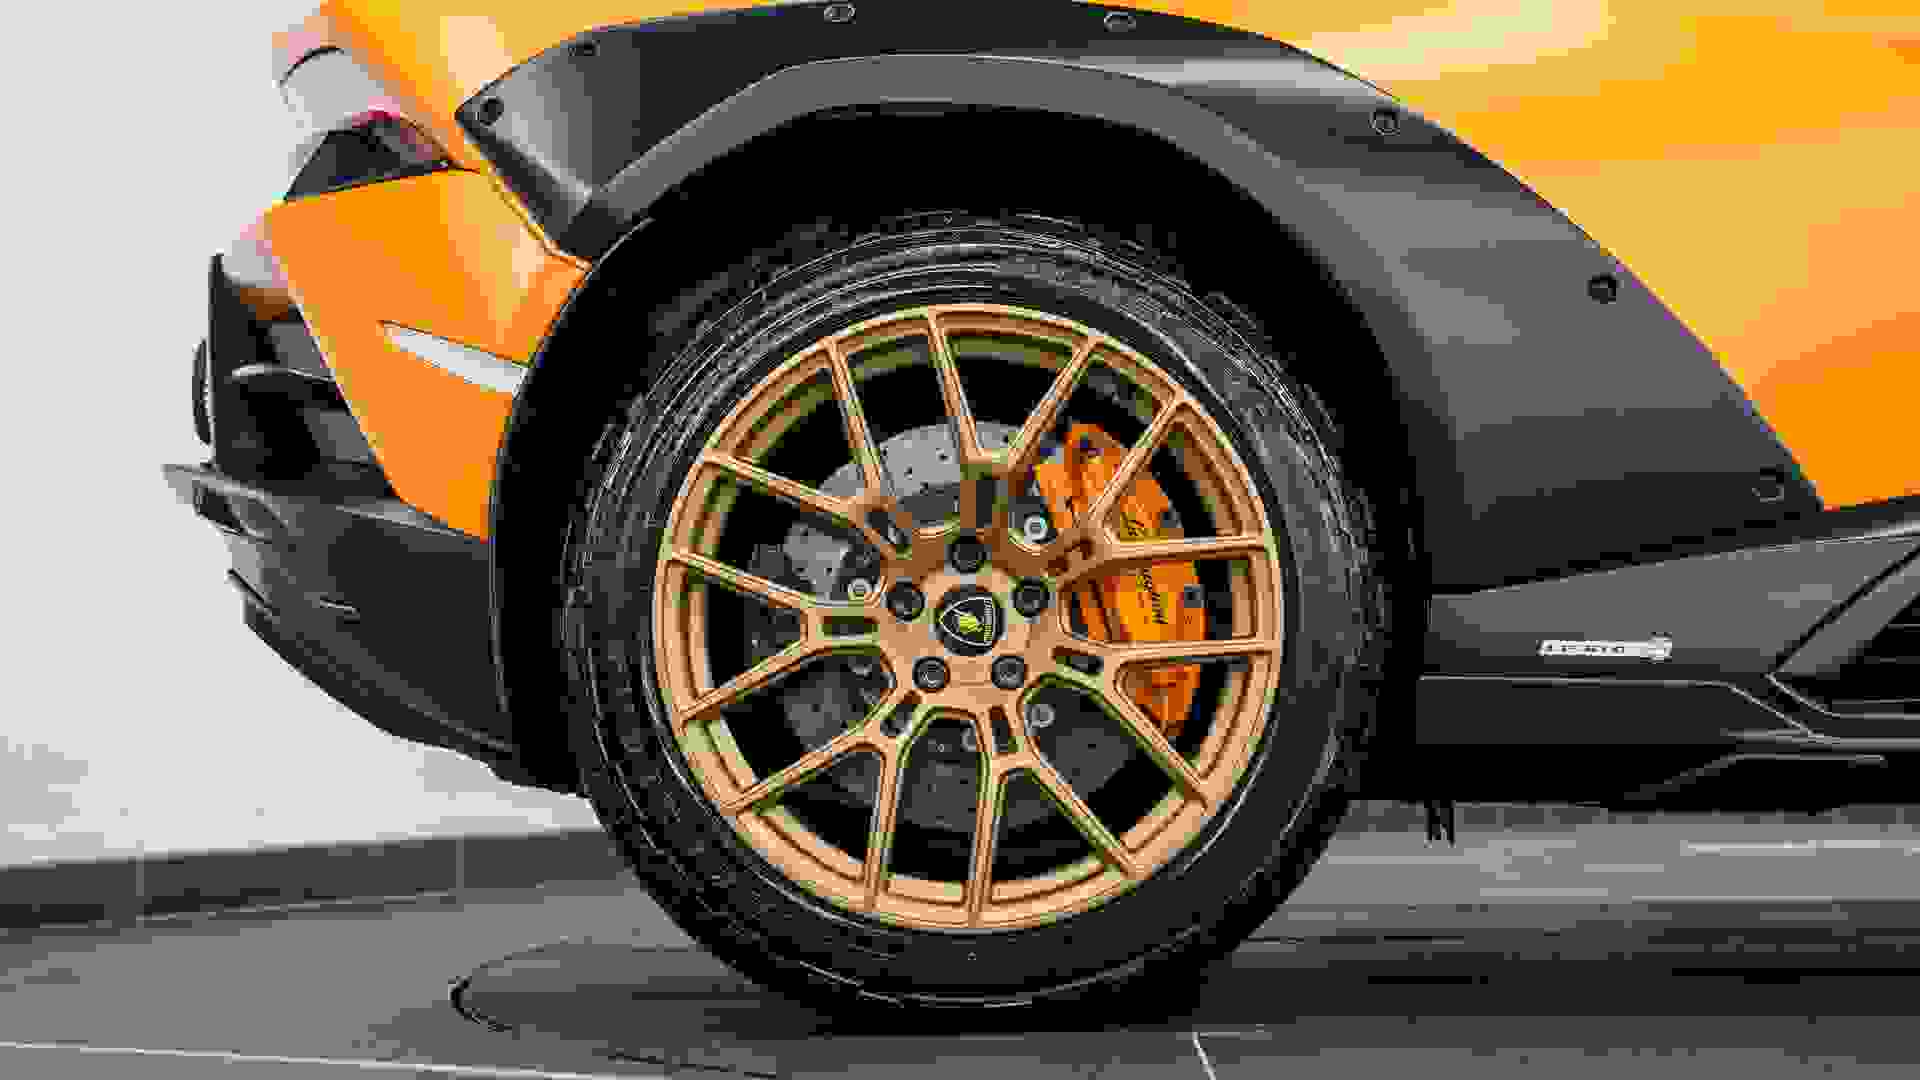 Lamborghini HURACAN Photo f1d65846-0662-4e20-b1e4-6789b189e8a1.jpg